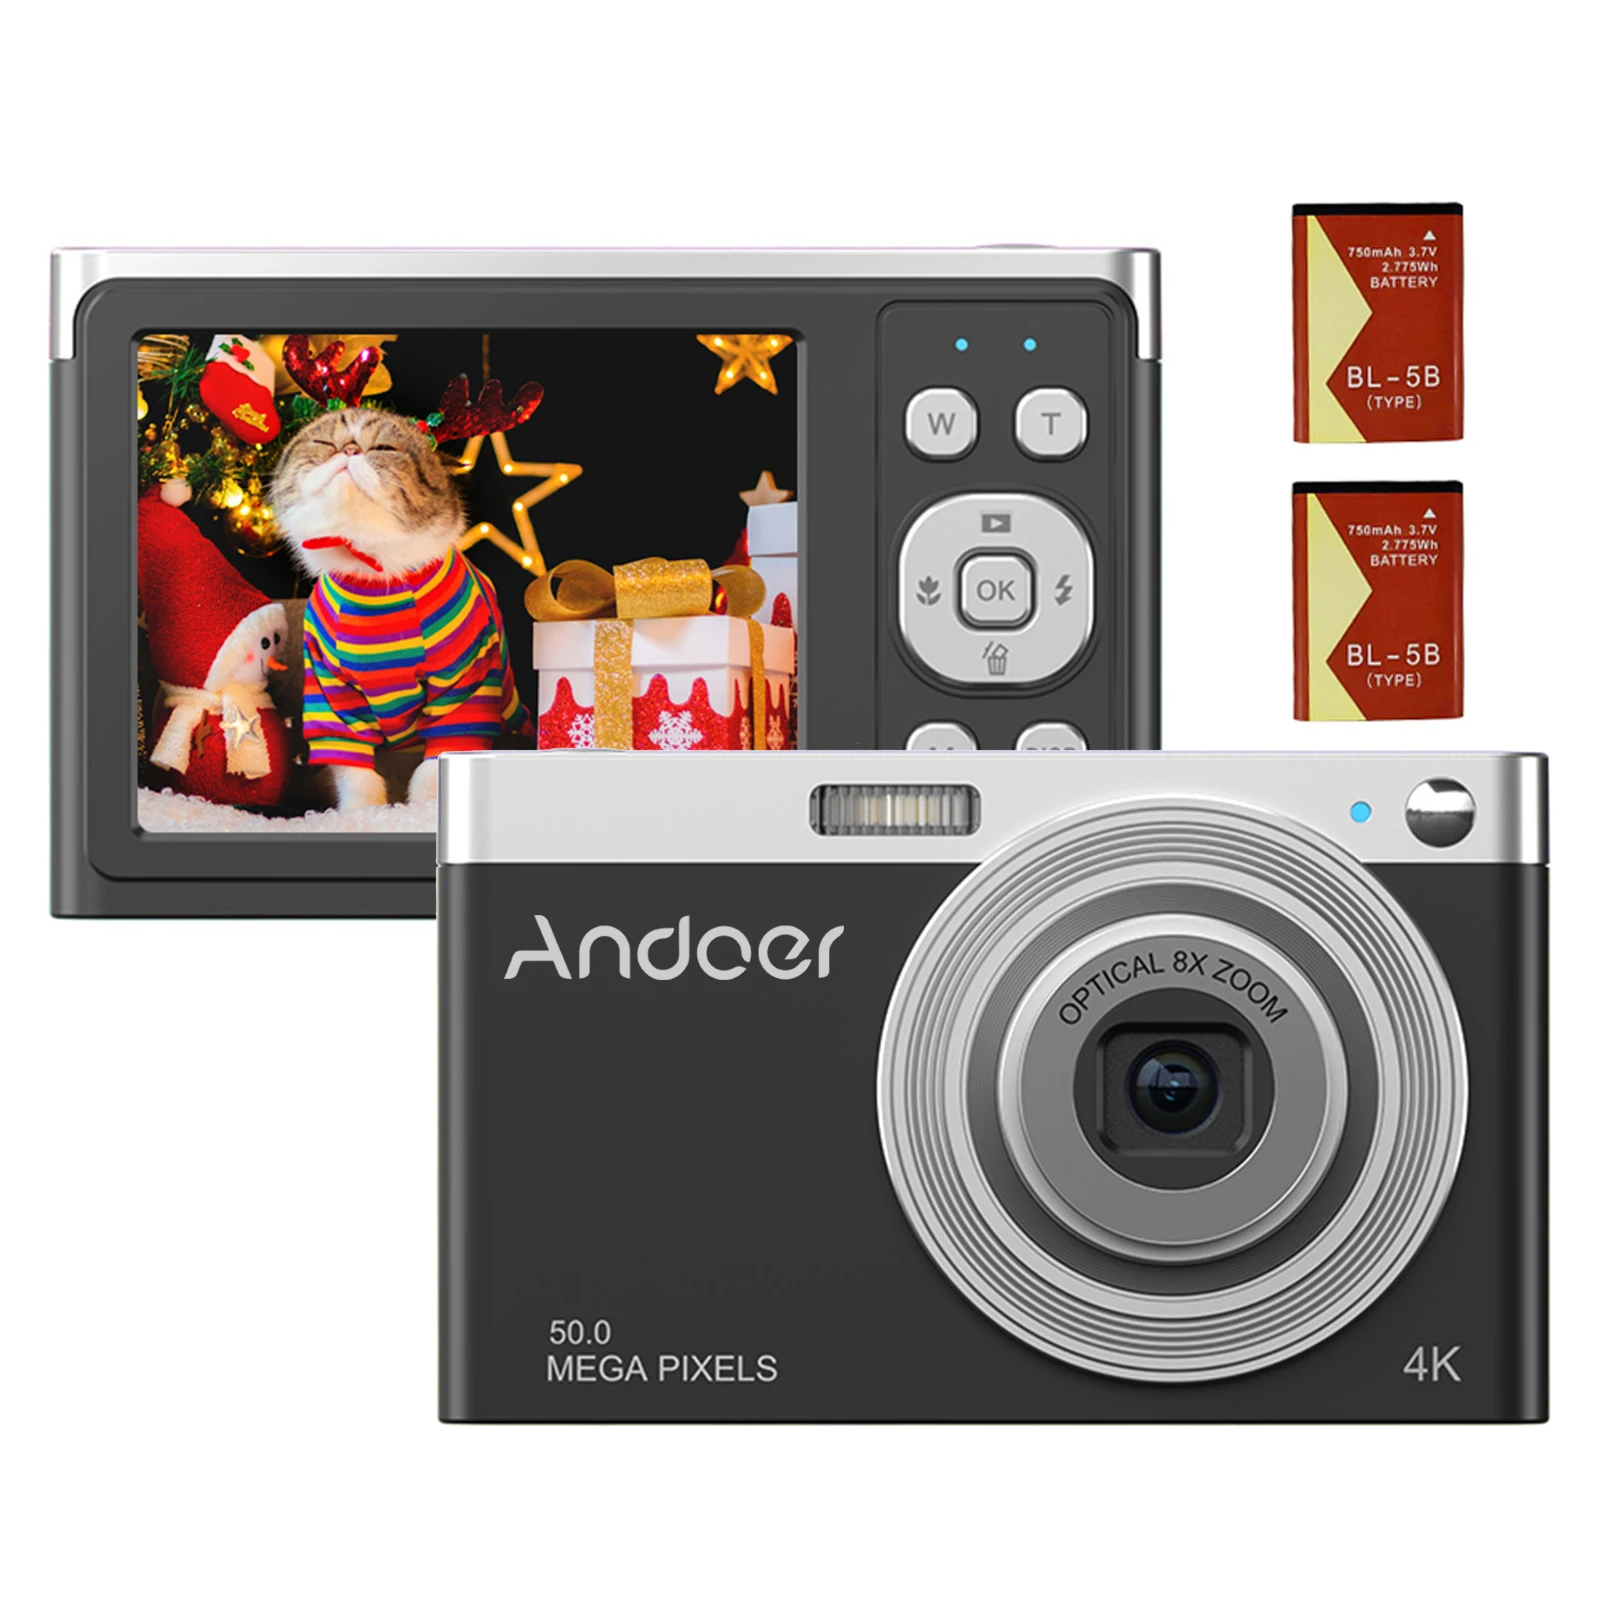 

Цифровая камера Andoer, портативная видеокамера 4K 50 МП, автофокус, 16-кратный зум, функция стабилизации лица, встроенная вспышка на батарейках